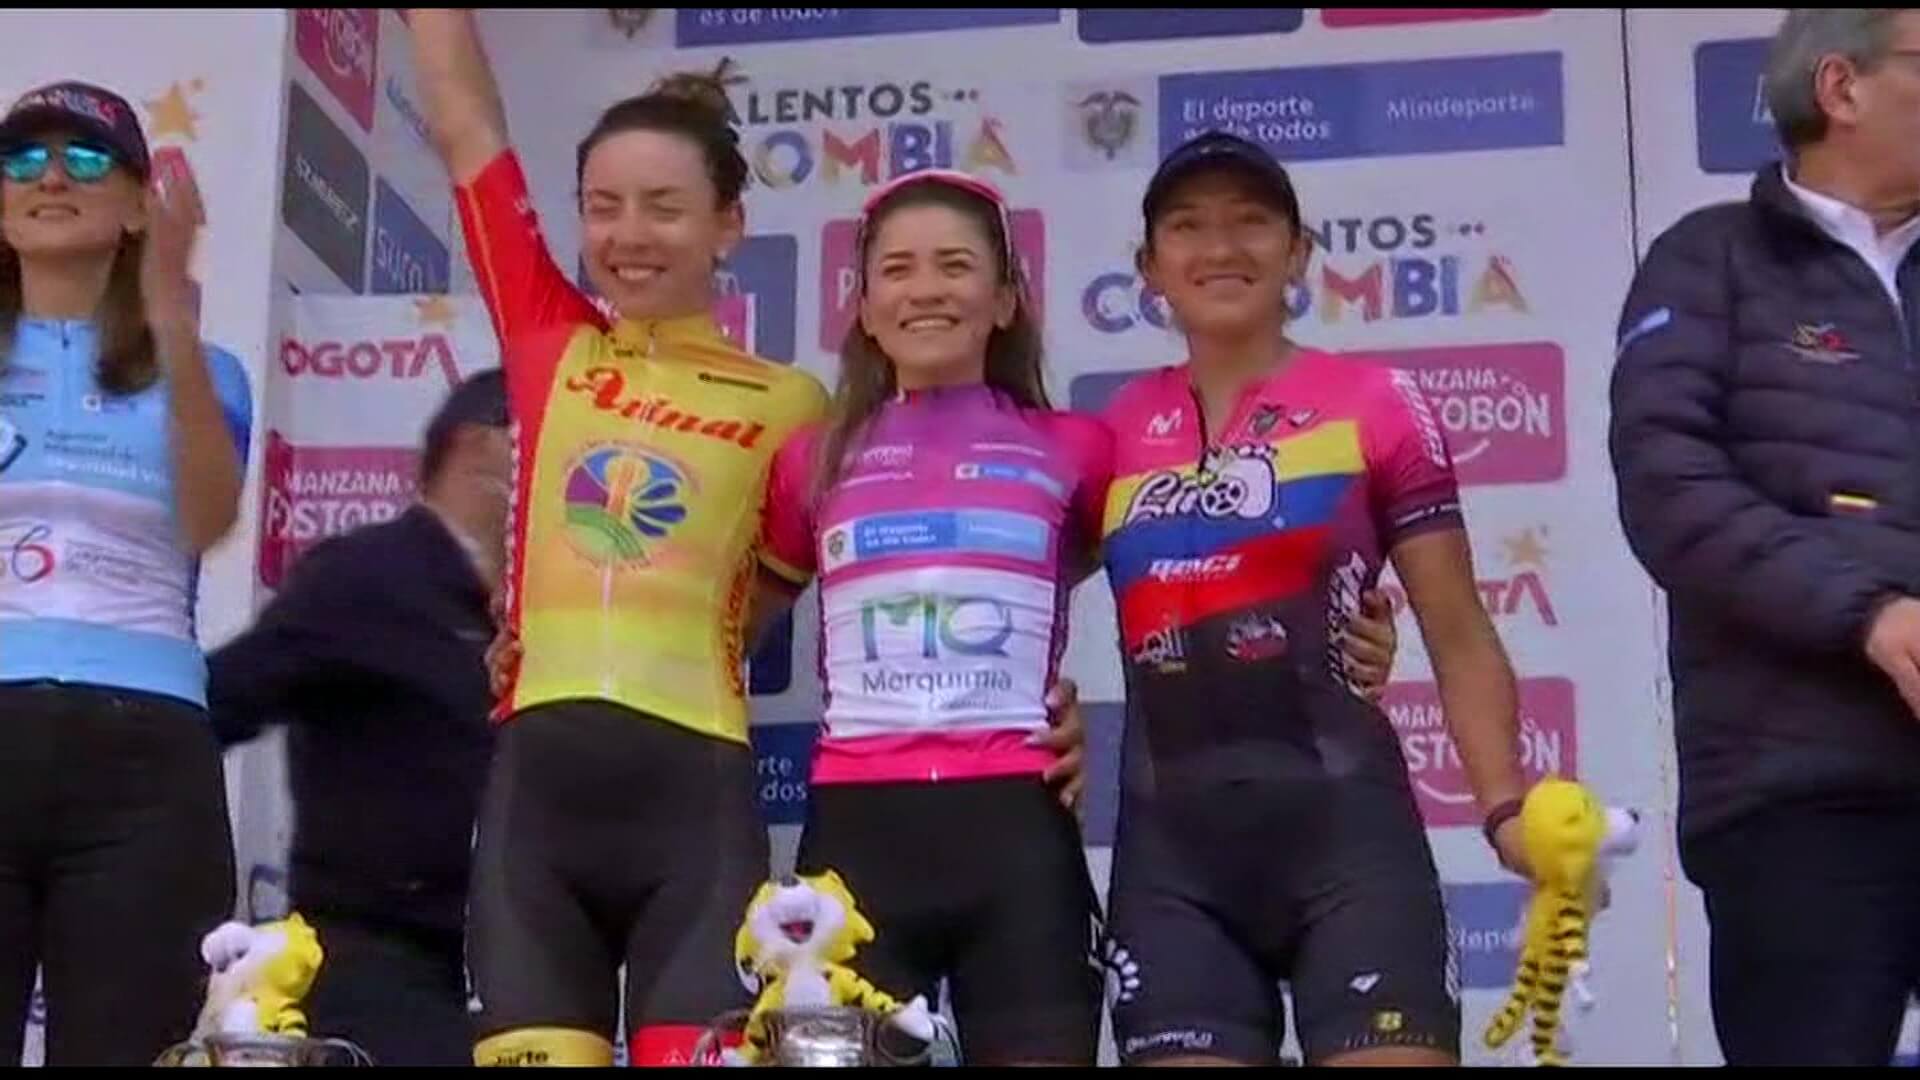 Lilibeth Chacón campeona con honores de la vuelta a Colombia